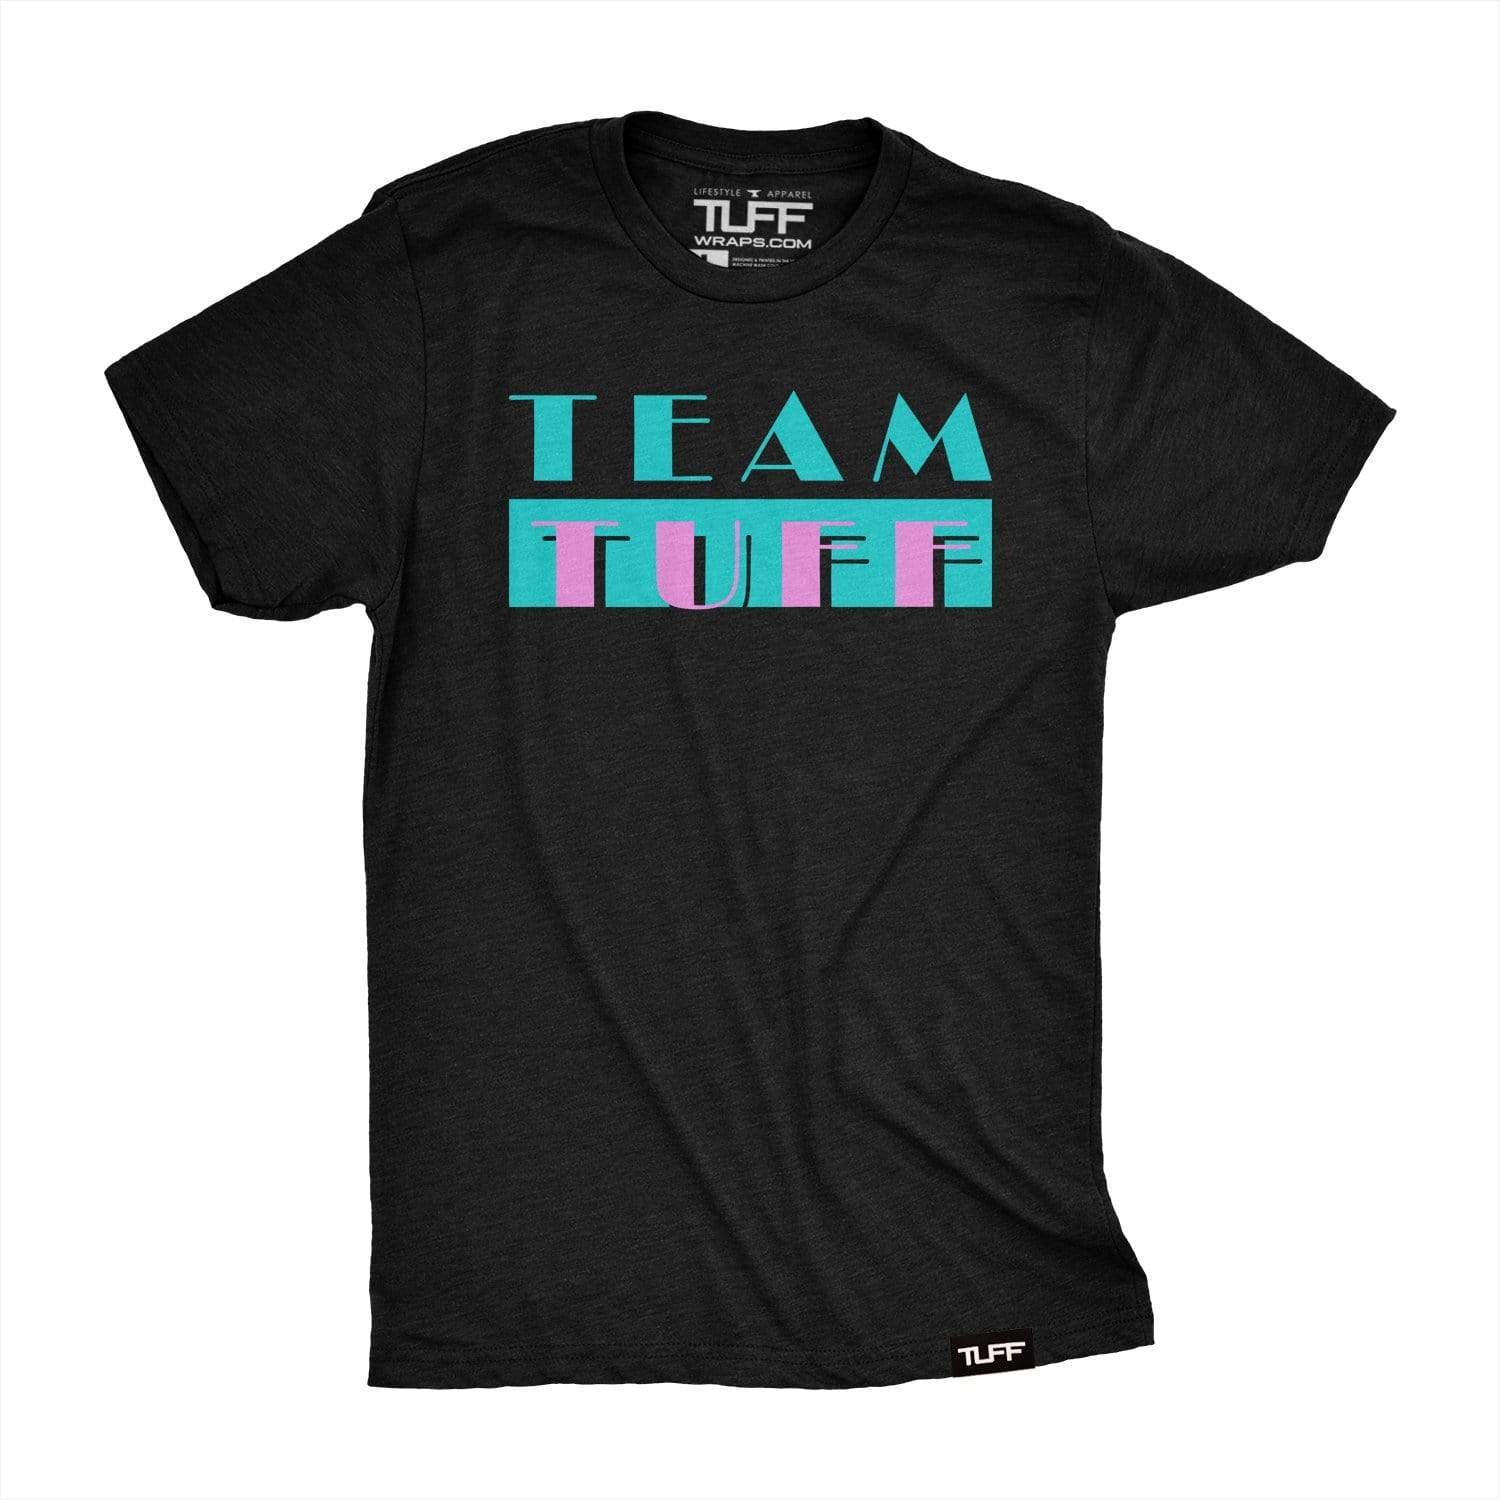 Team TUFF Retro Tee S / Black TuffWraps.com